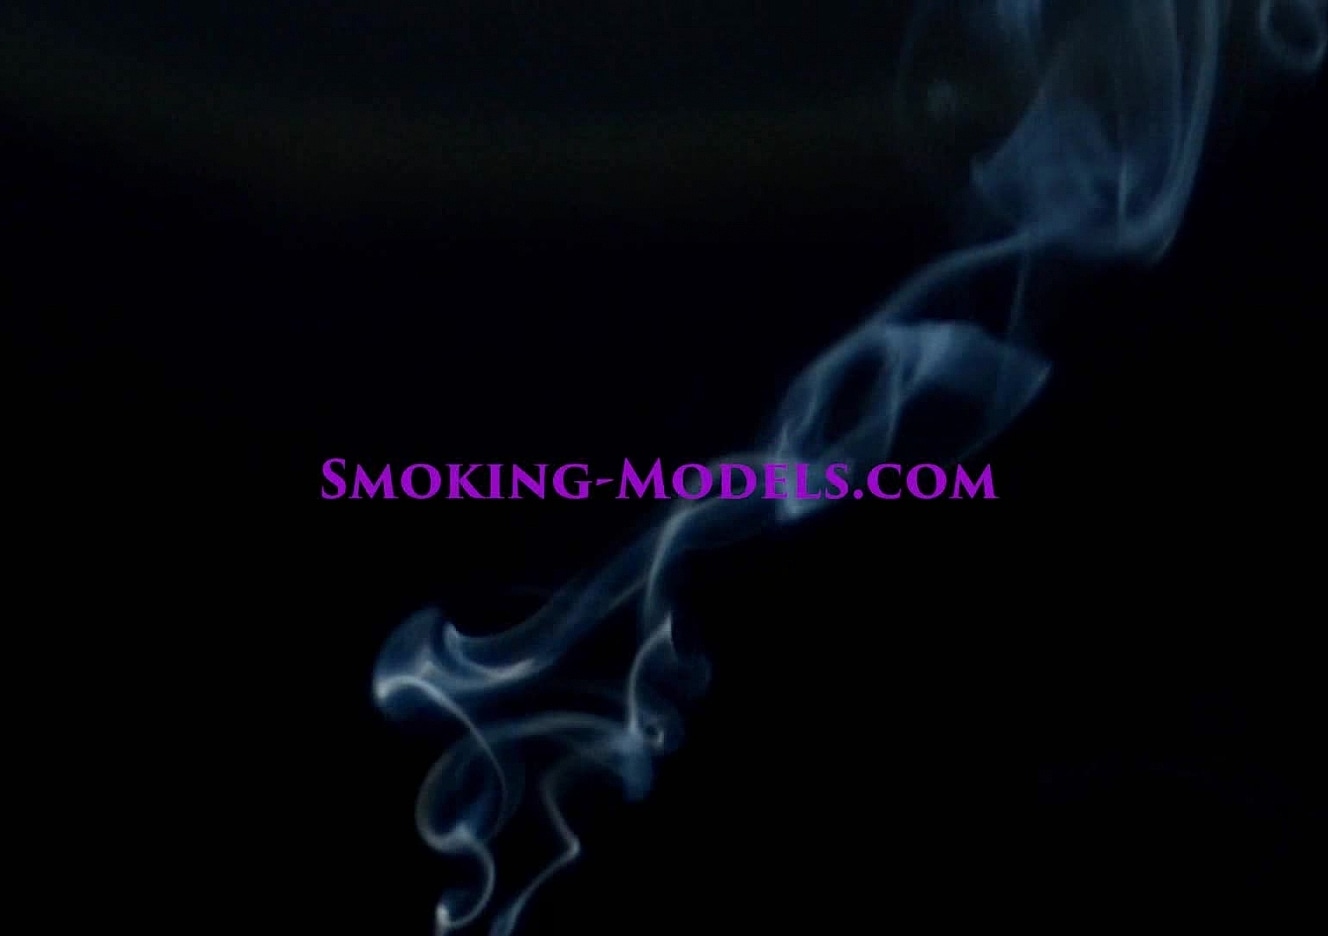 content/SMOKINGM-V-2742/0.jpg